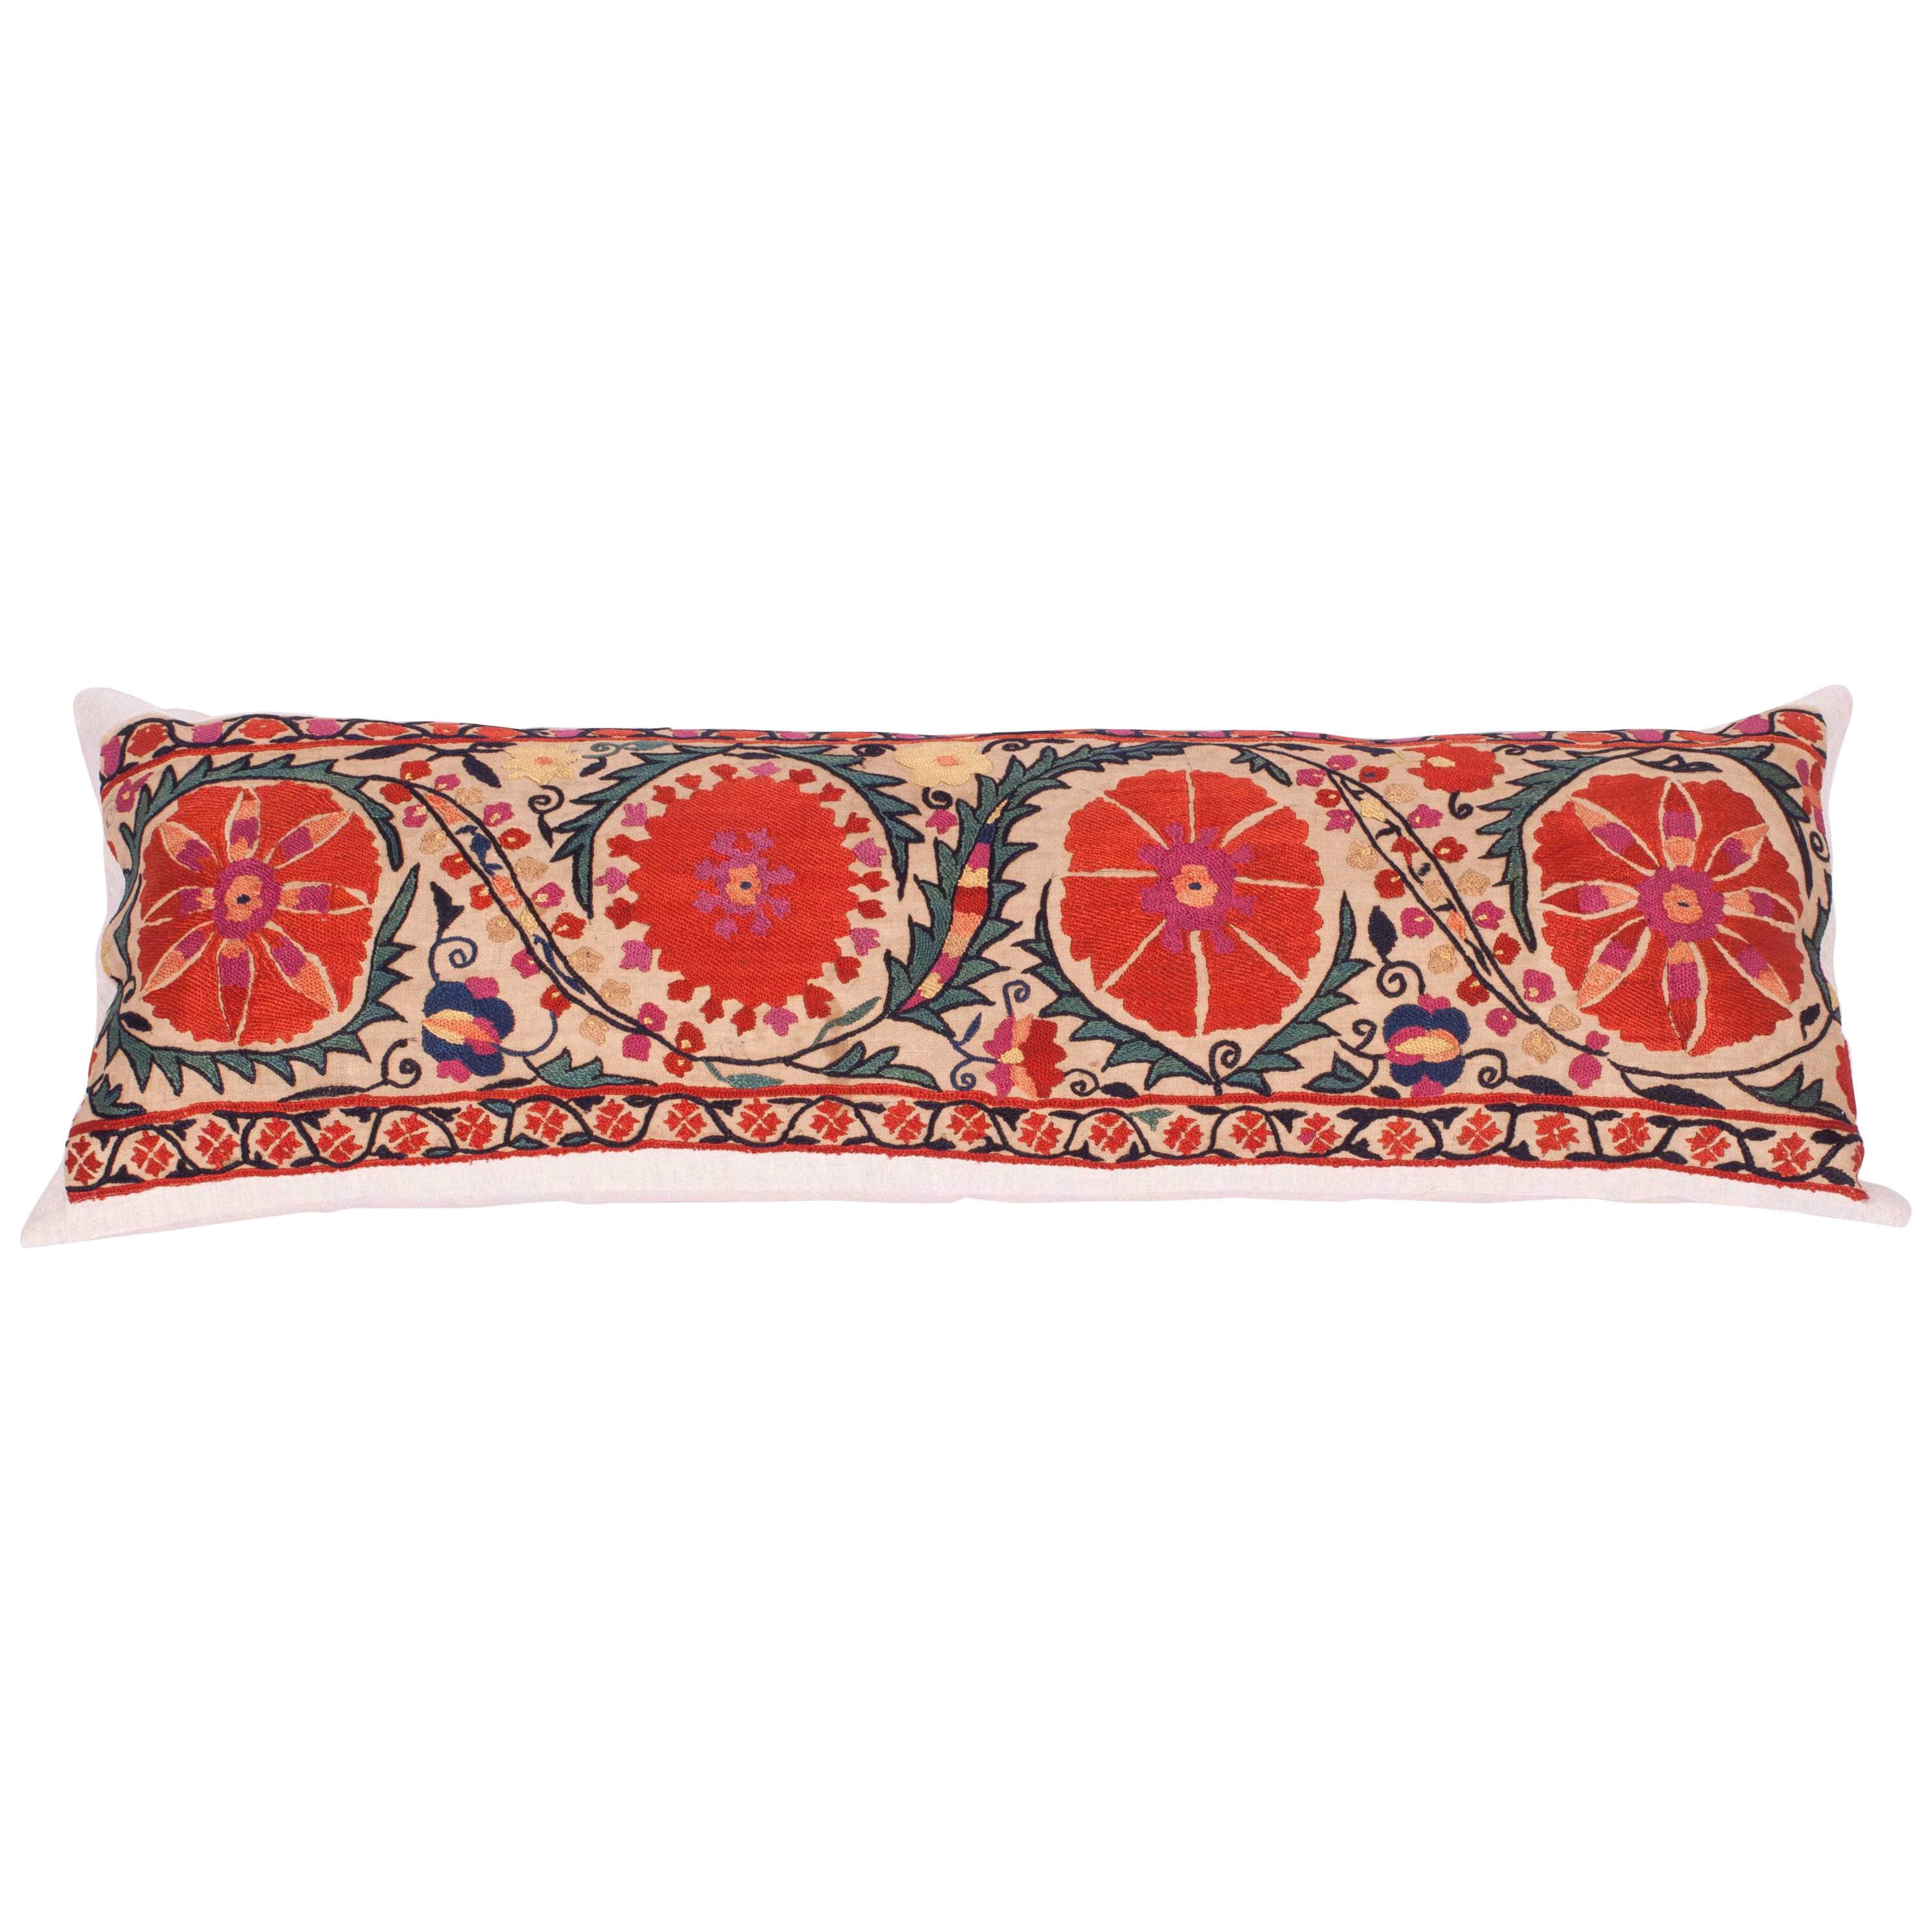 Antique Suzani Pillow Fashioned from a 19th Century, Nurata Suzani